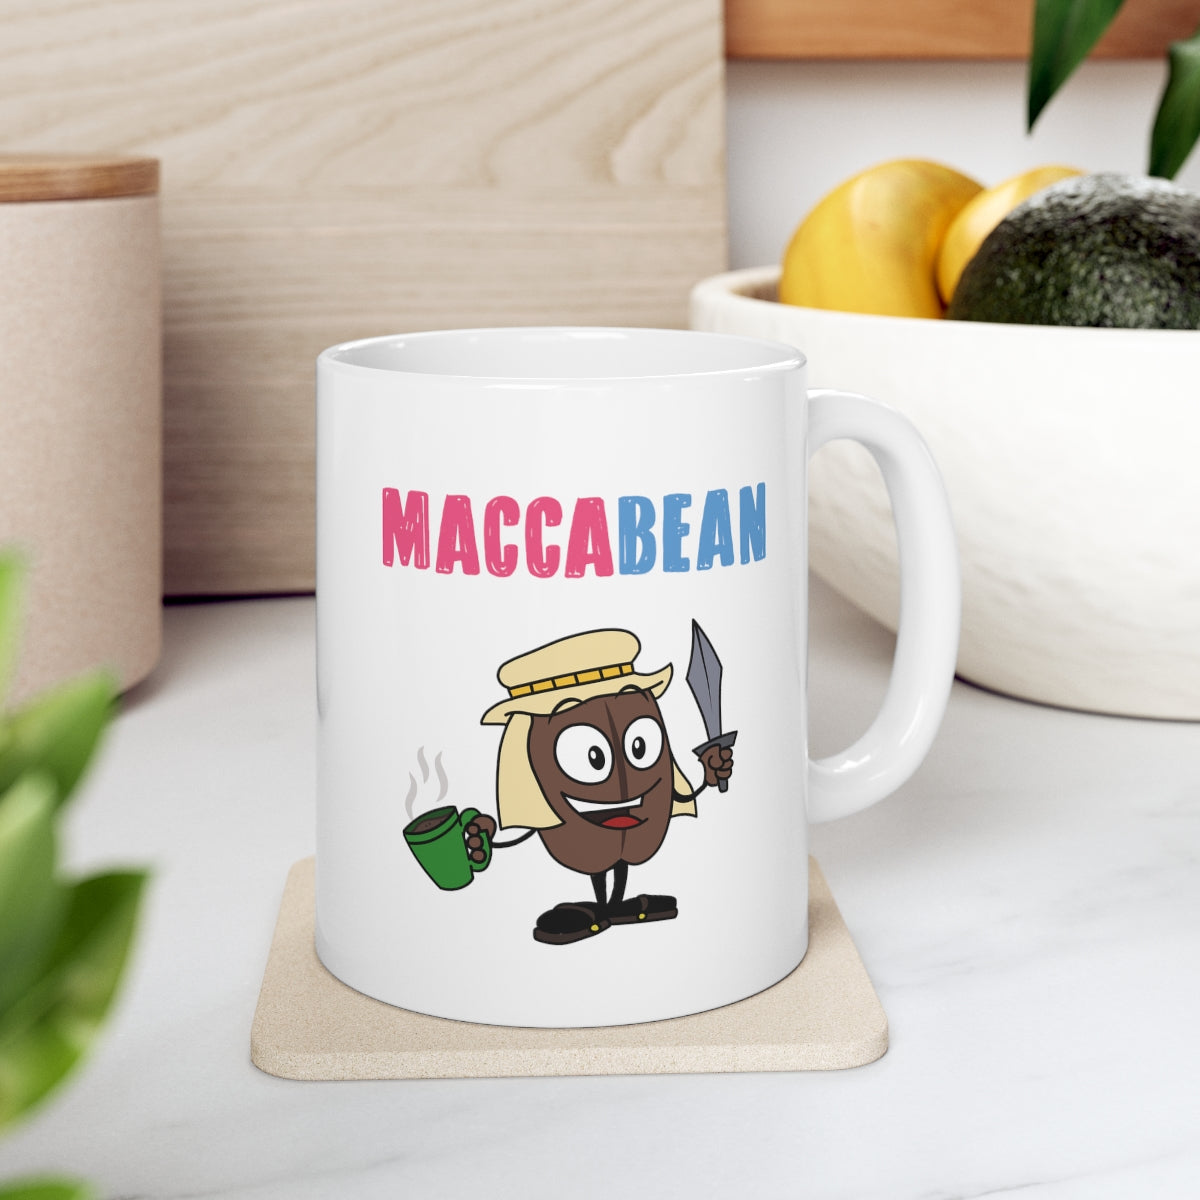 MaccaBean Hanukkah Mug